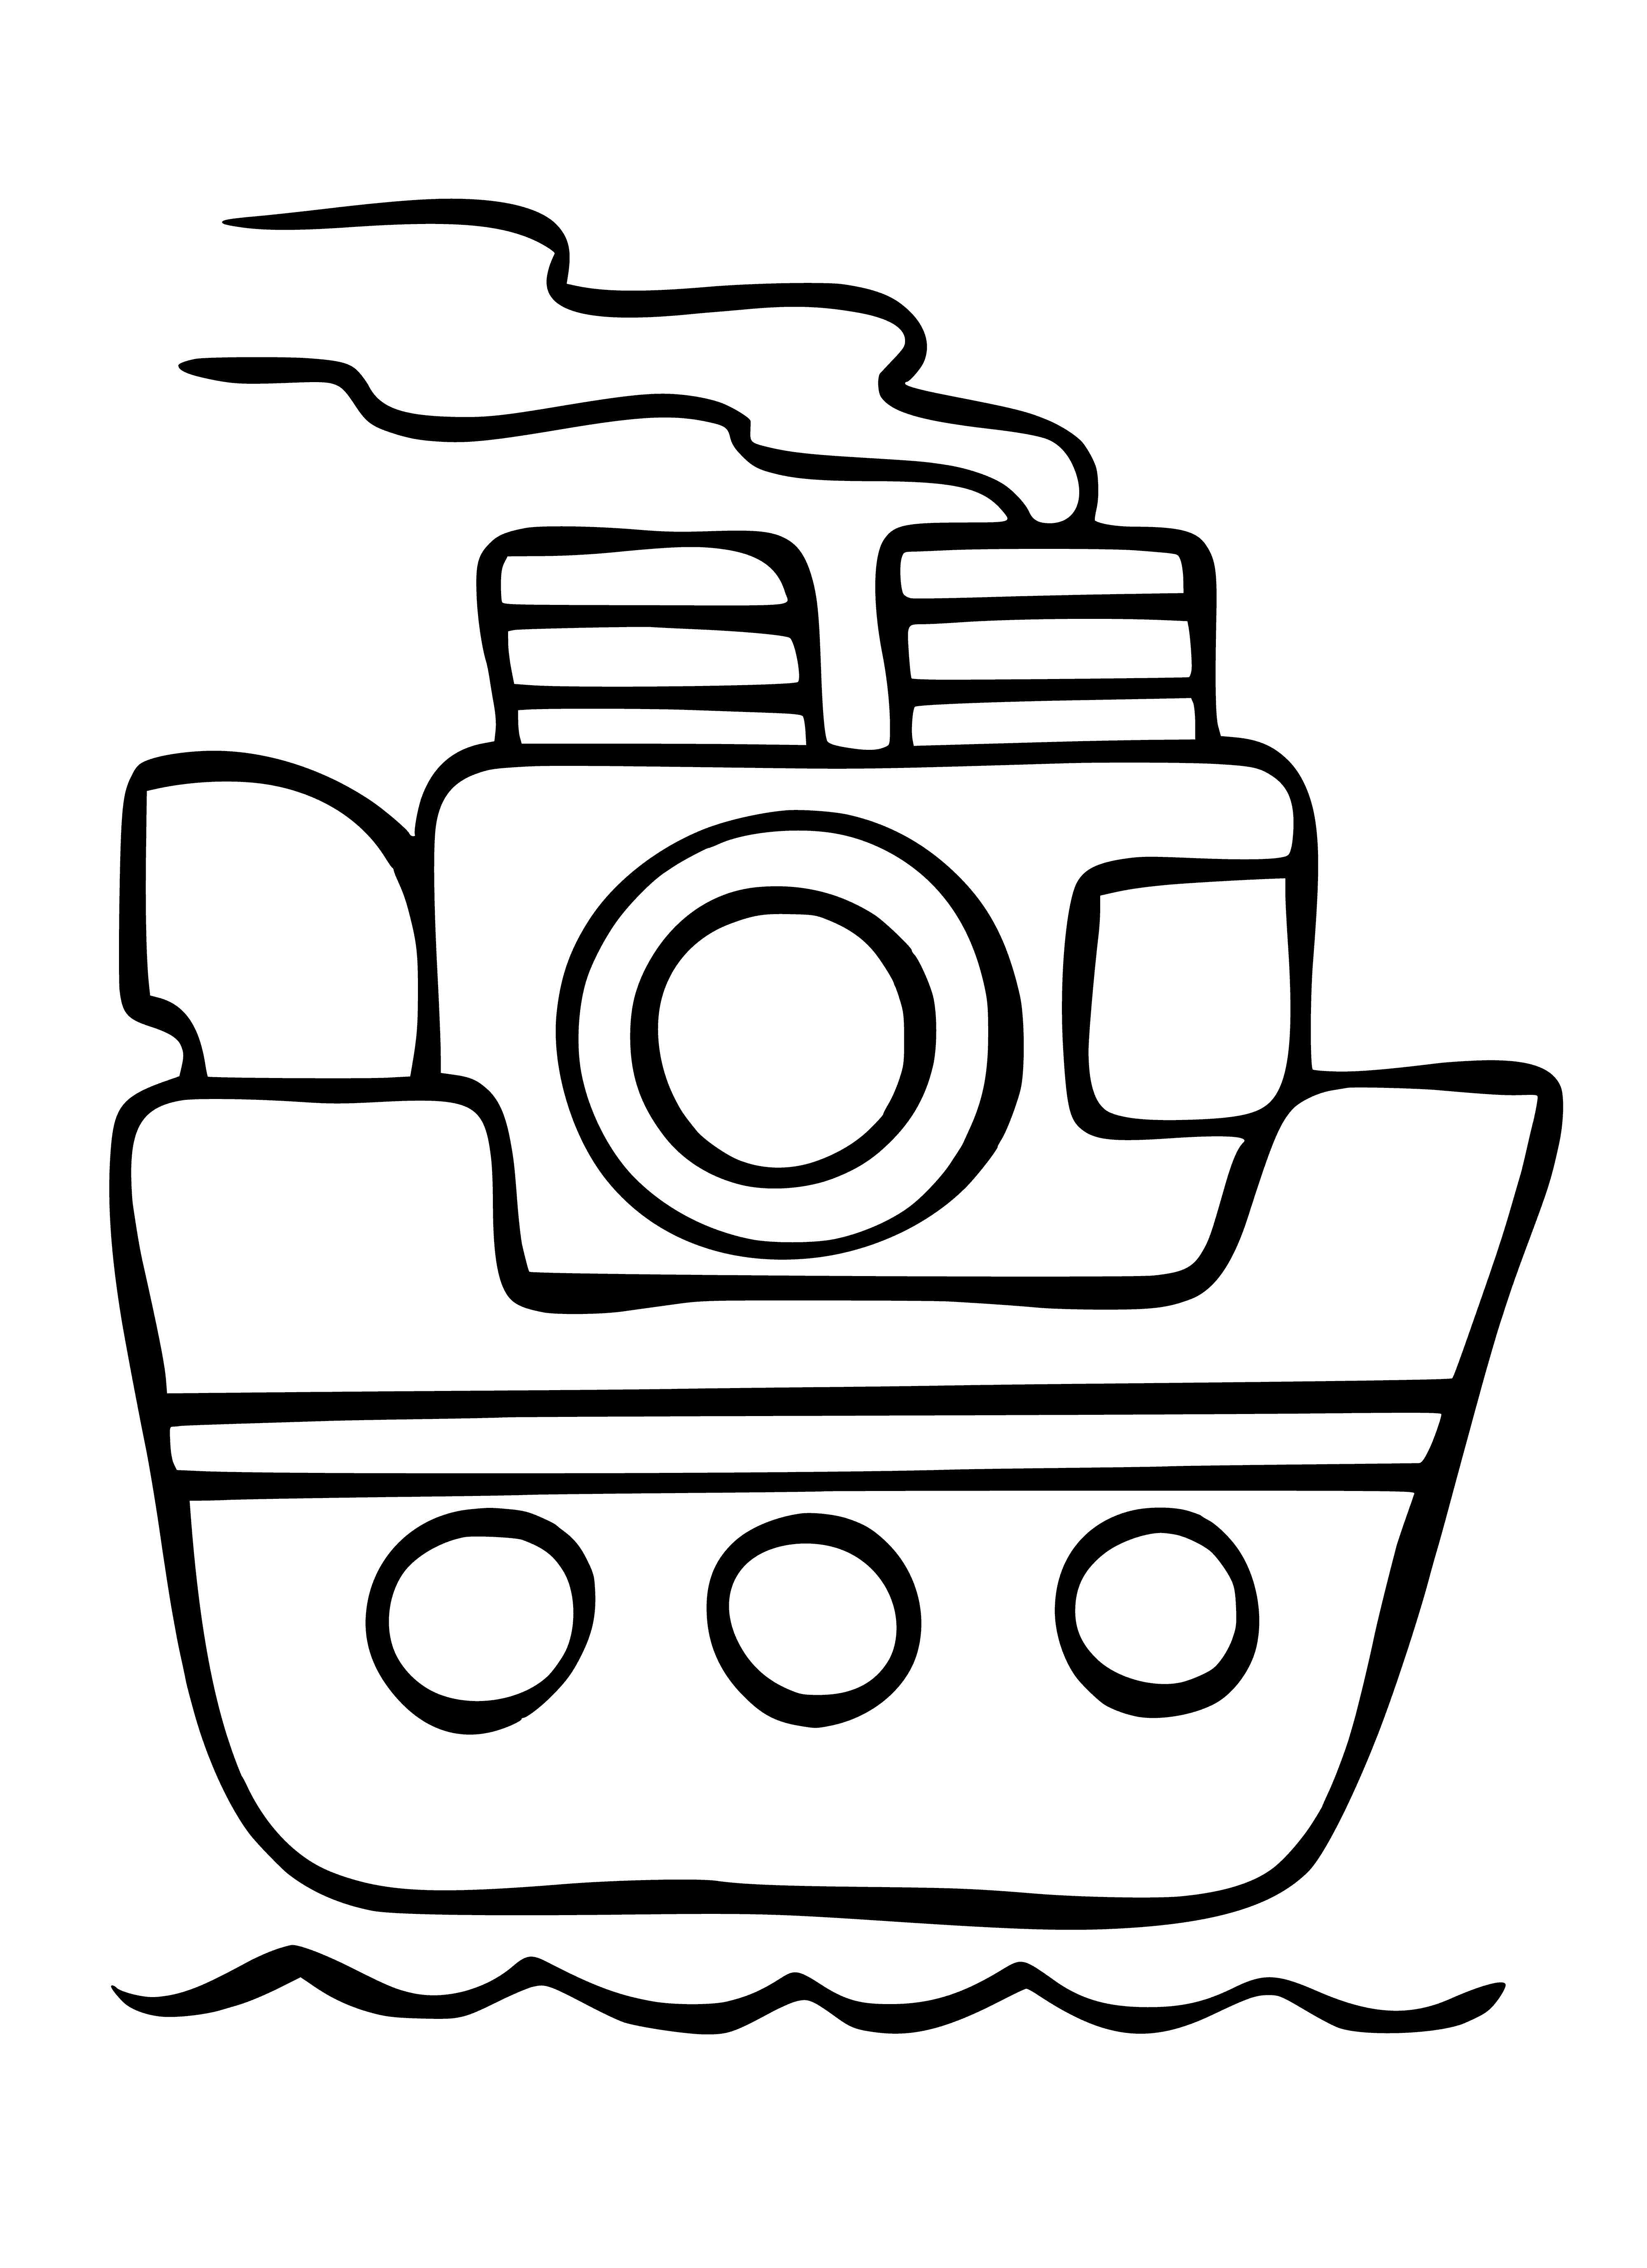 Stoomboot inkleurbladsy